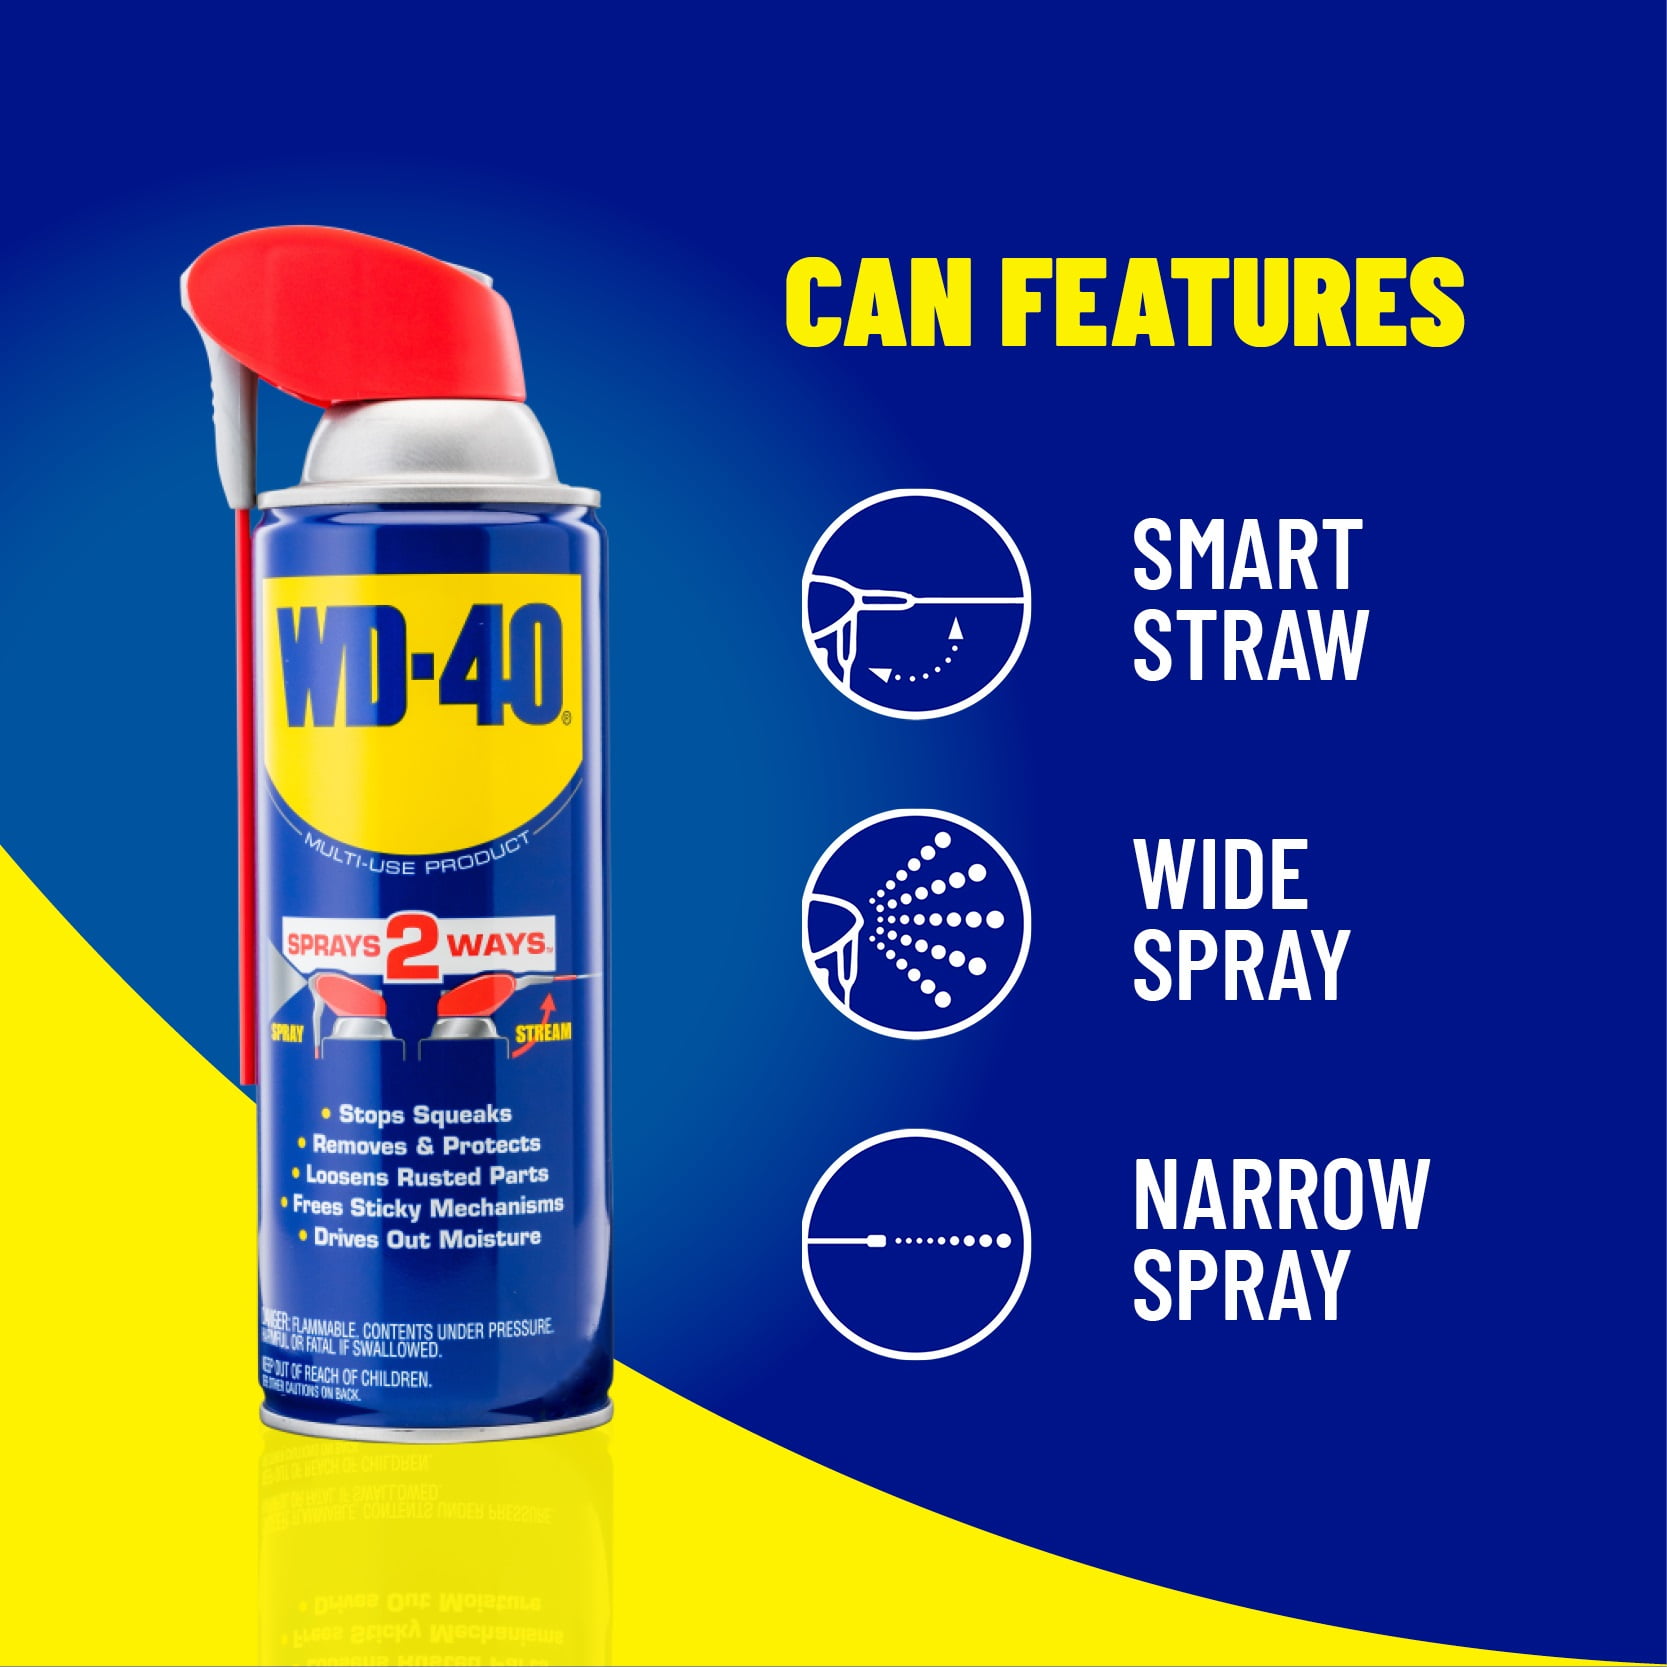 Wd 40 Multi Use Product With Smart Straw Sprays 2 Ways Multi Purpose